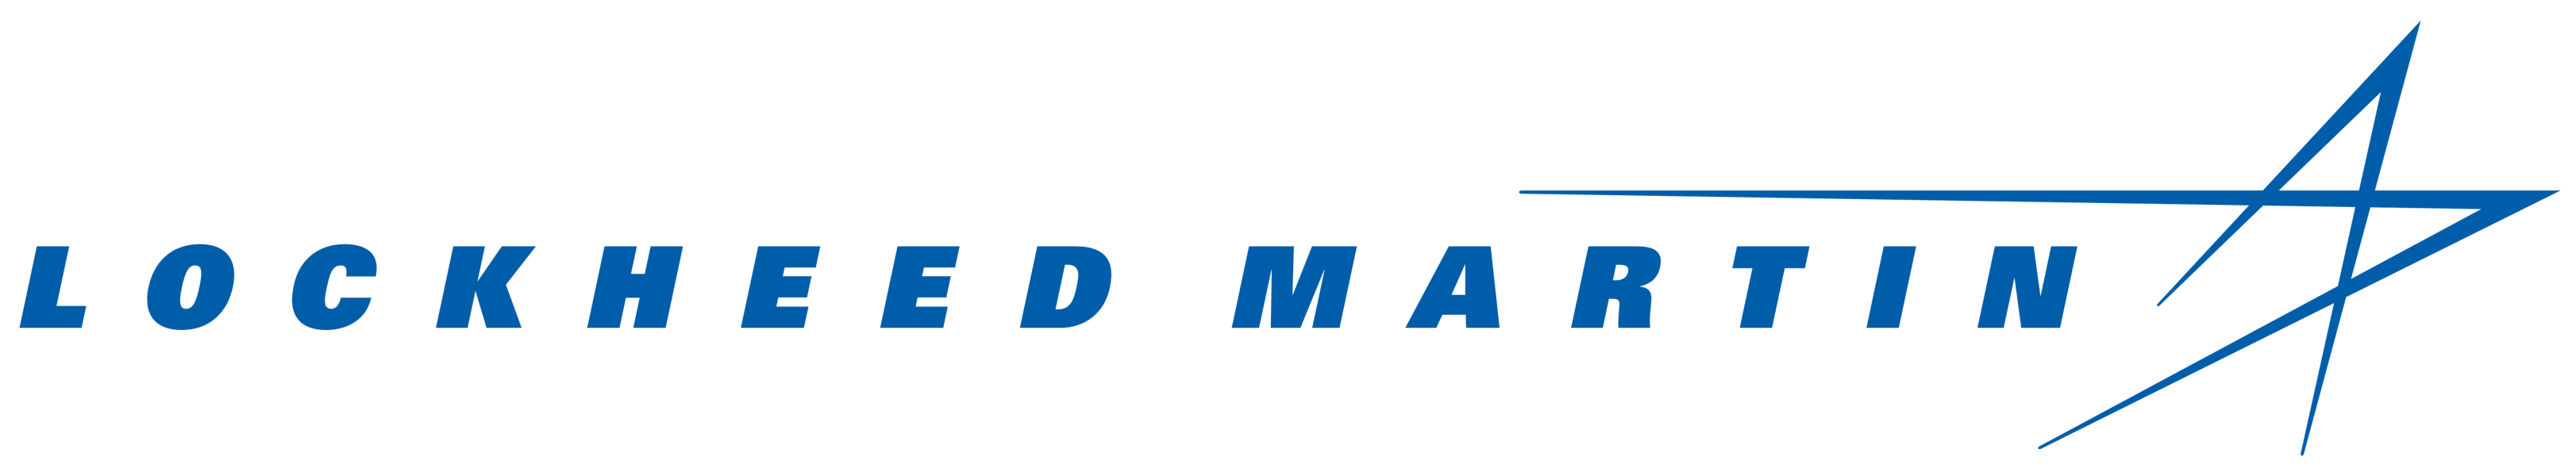 Lockheed_Martin_logo